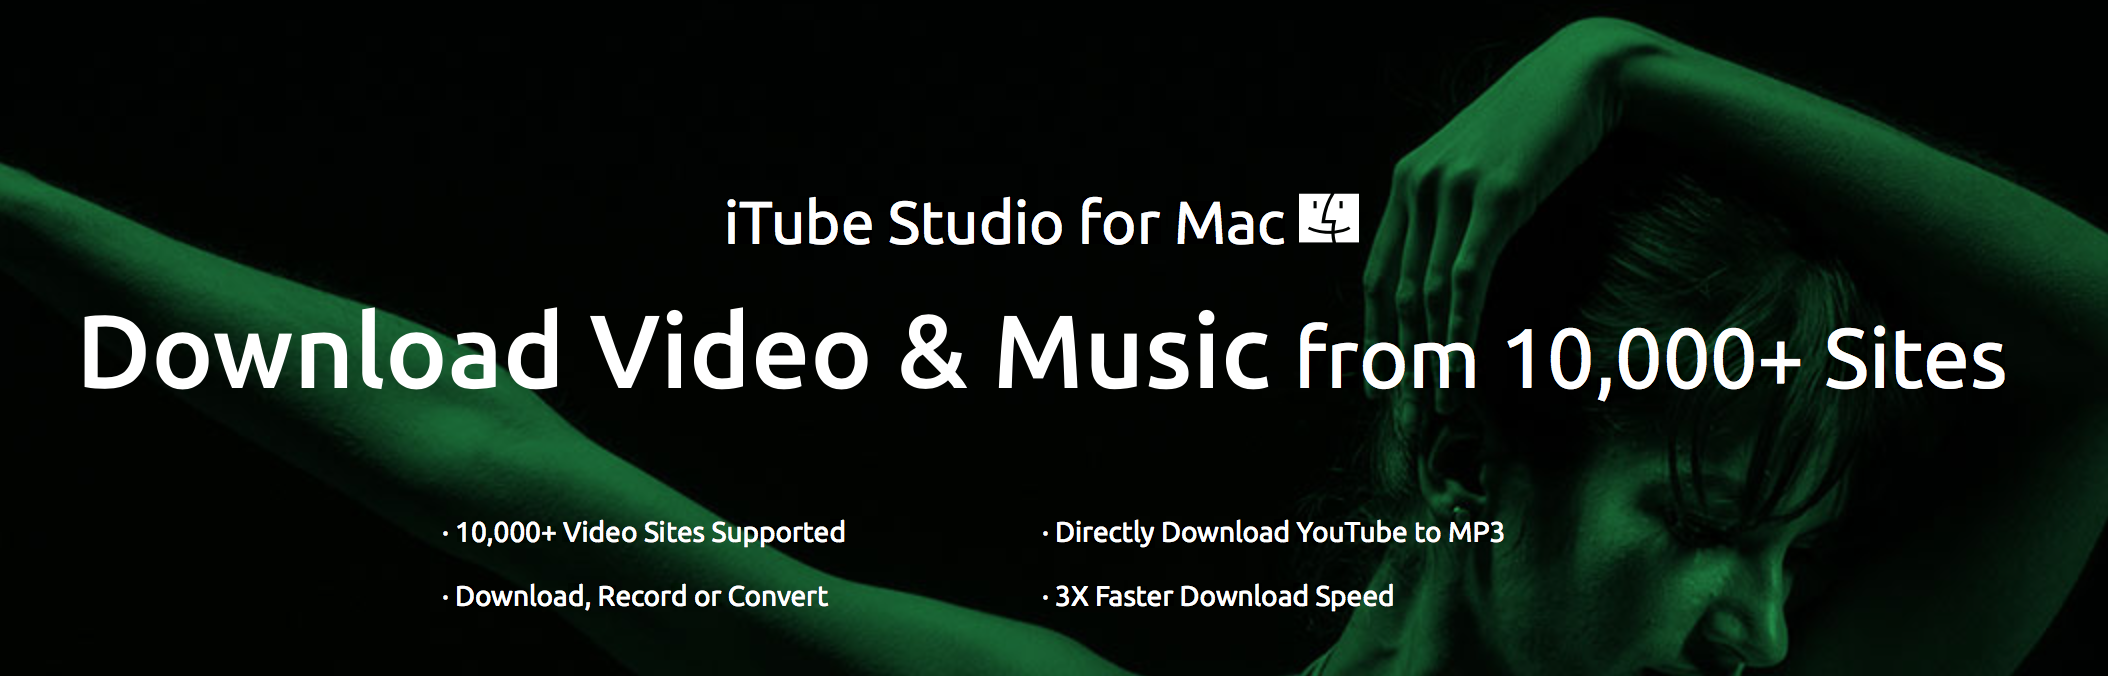 Itube studio for mac reviews